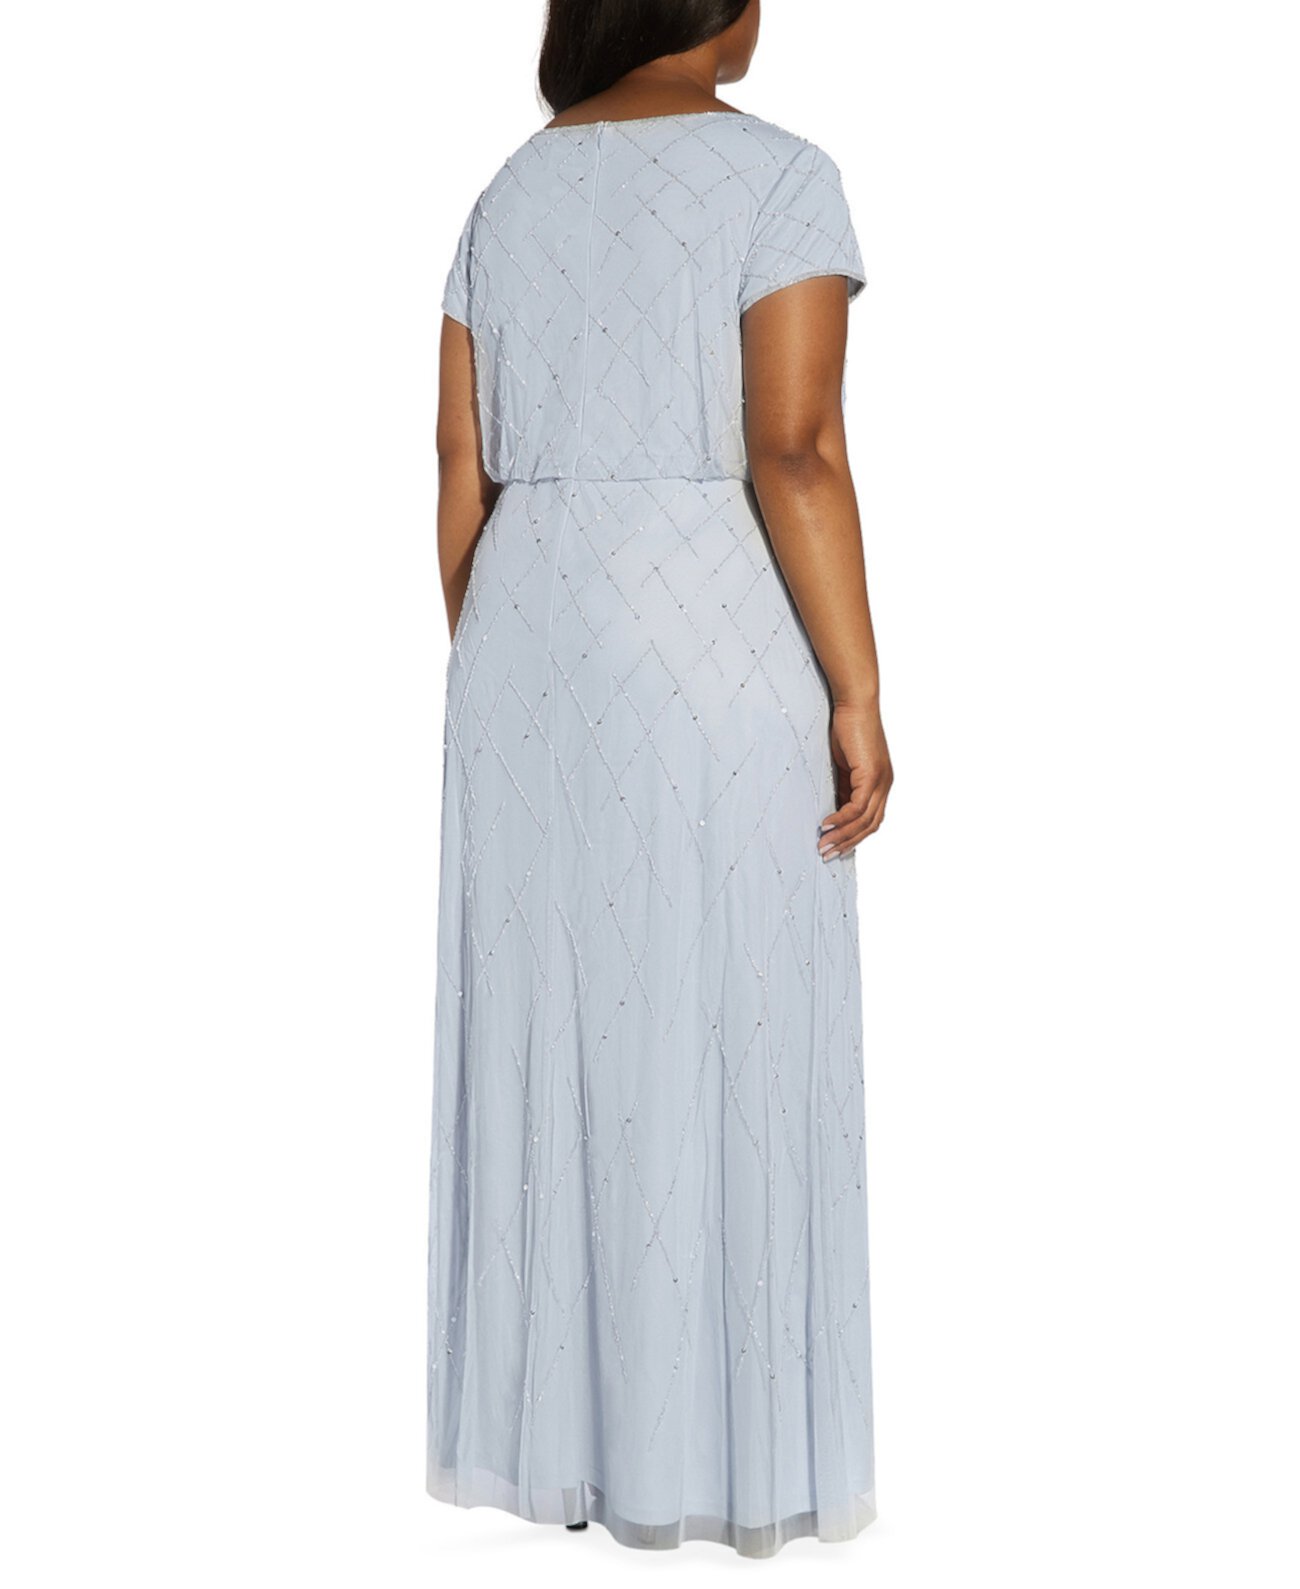 Украшенное блузонное платье больших размеров Adrianna Papell